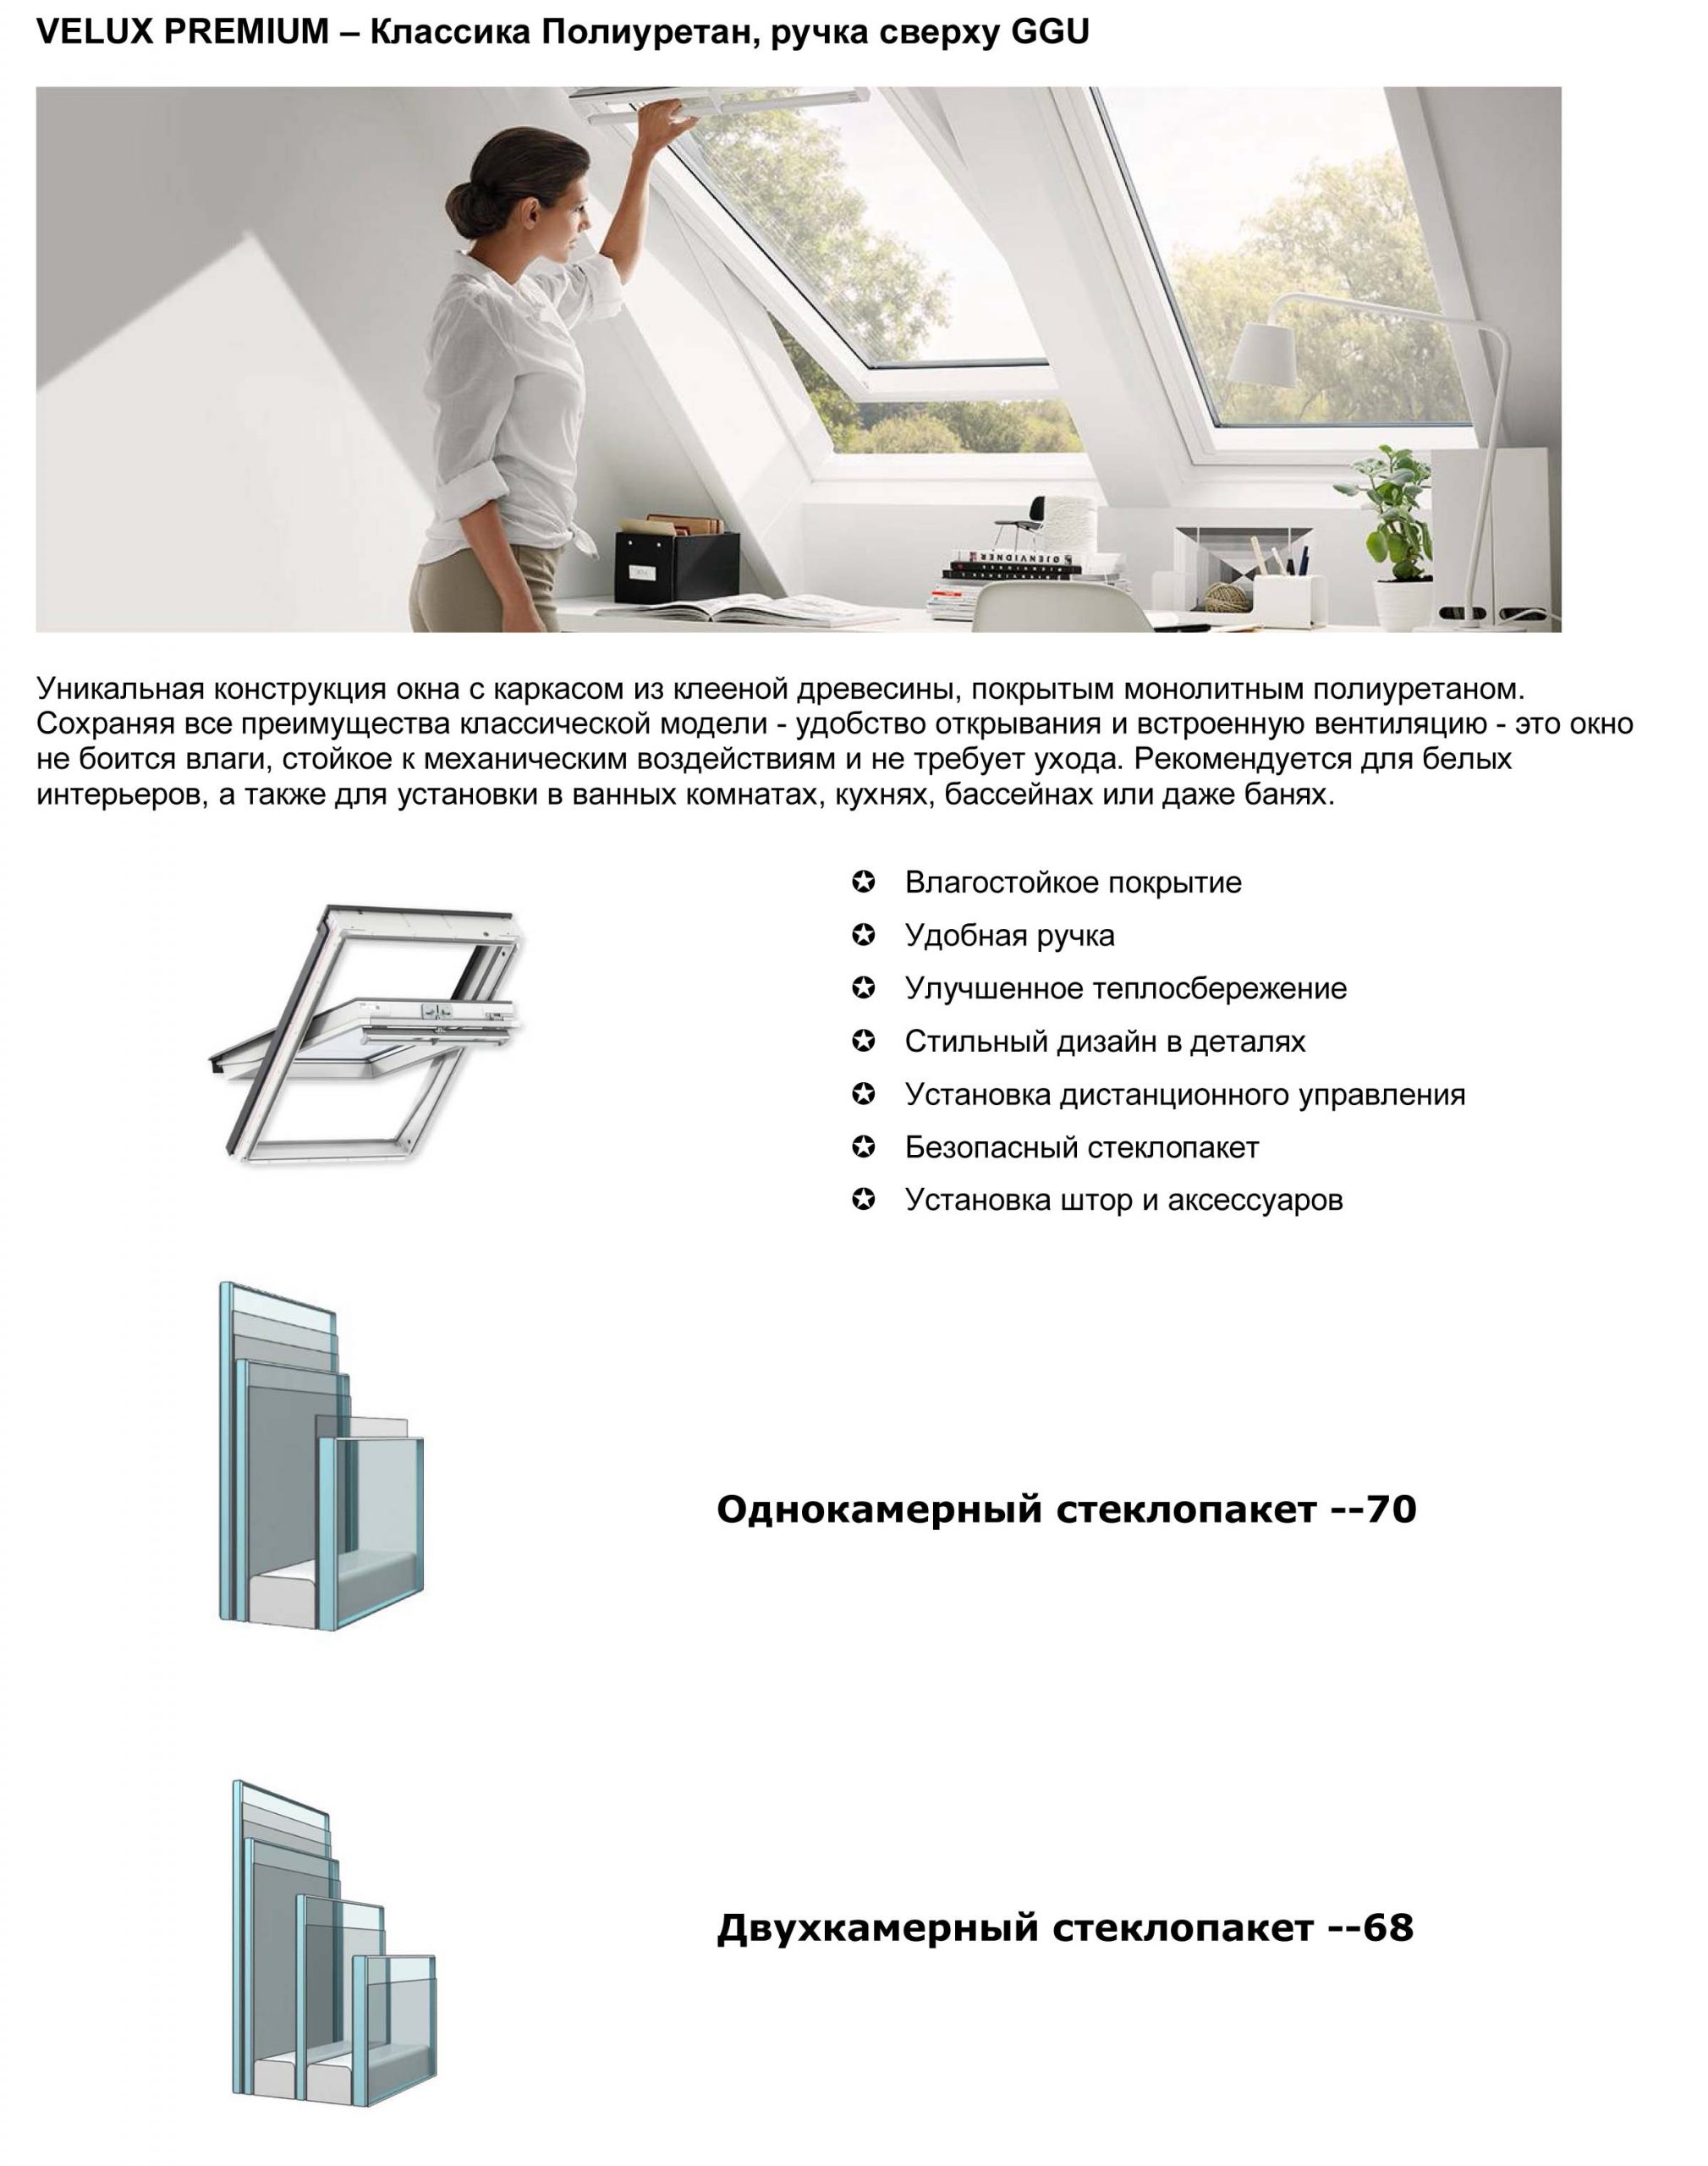 Мансардное окно GGU Velux купить в Минске